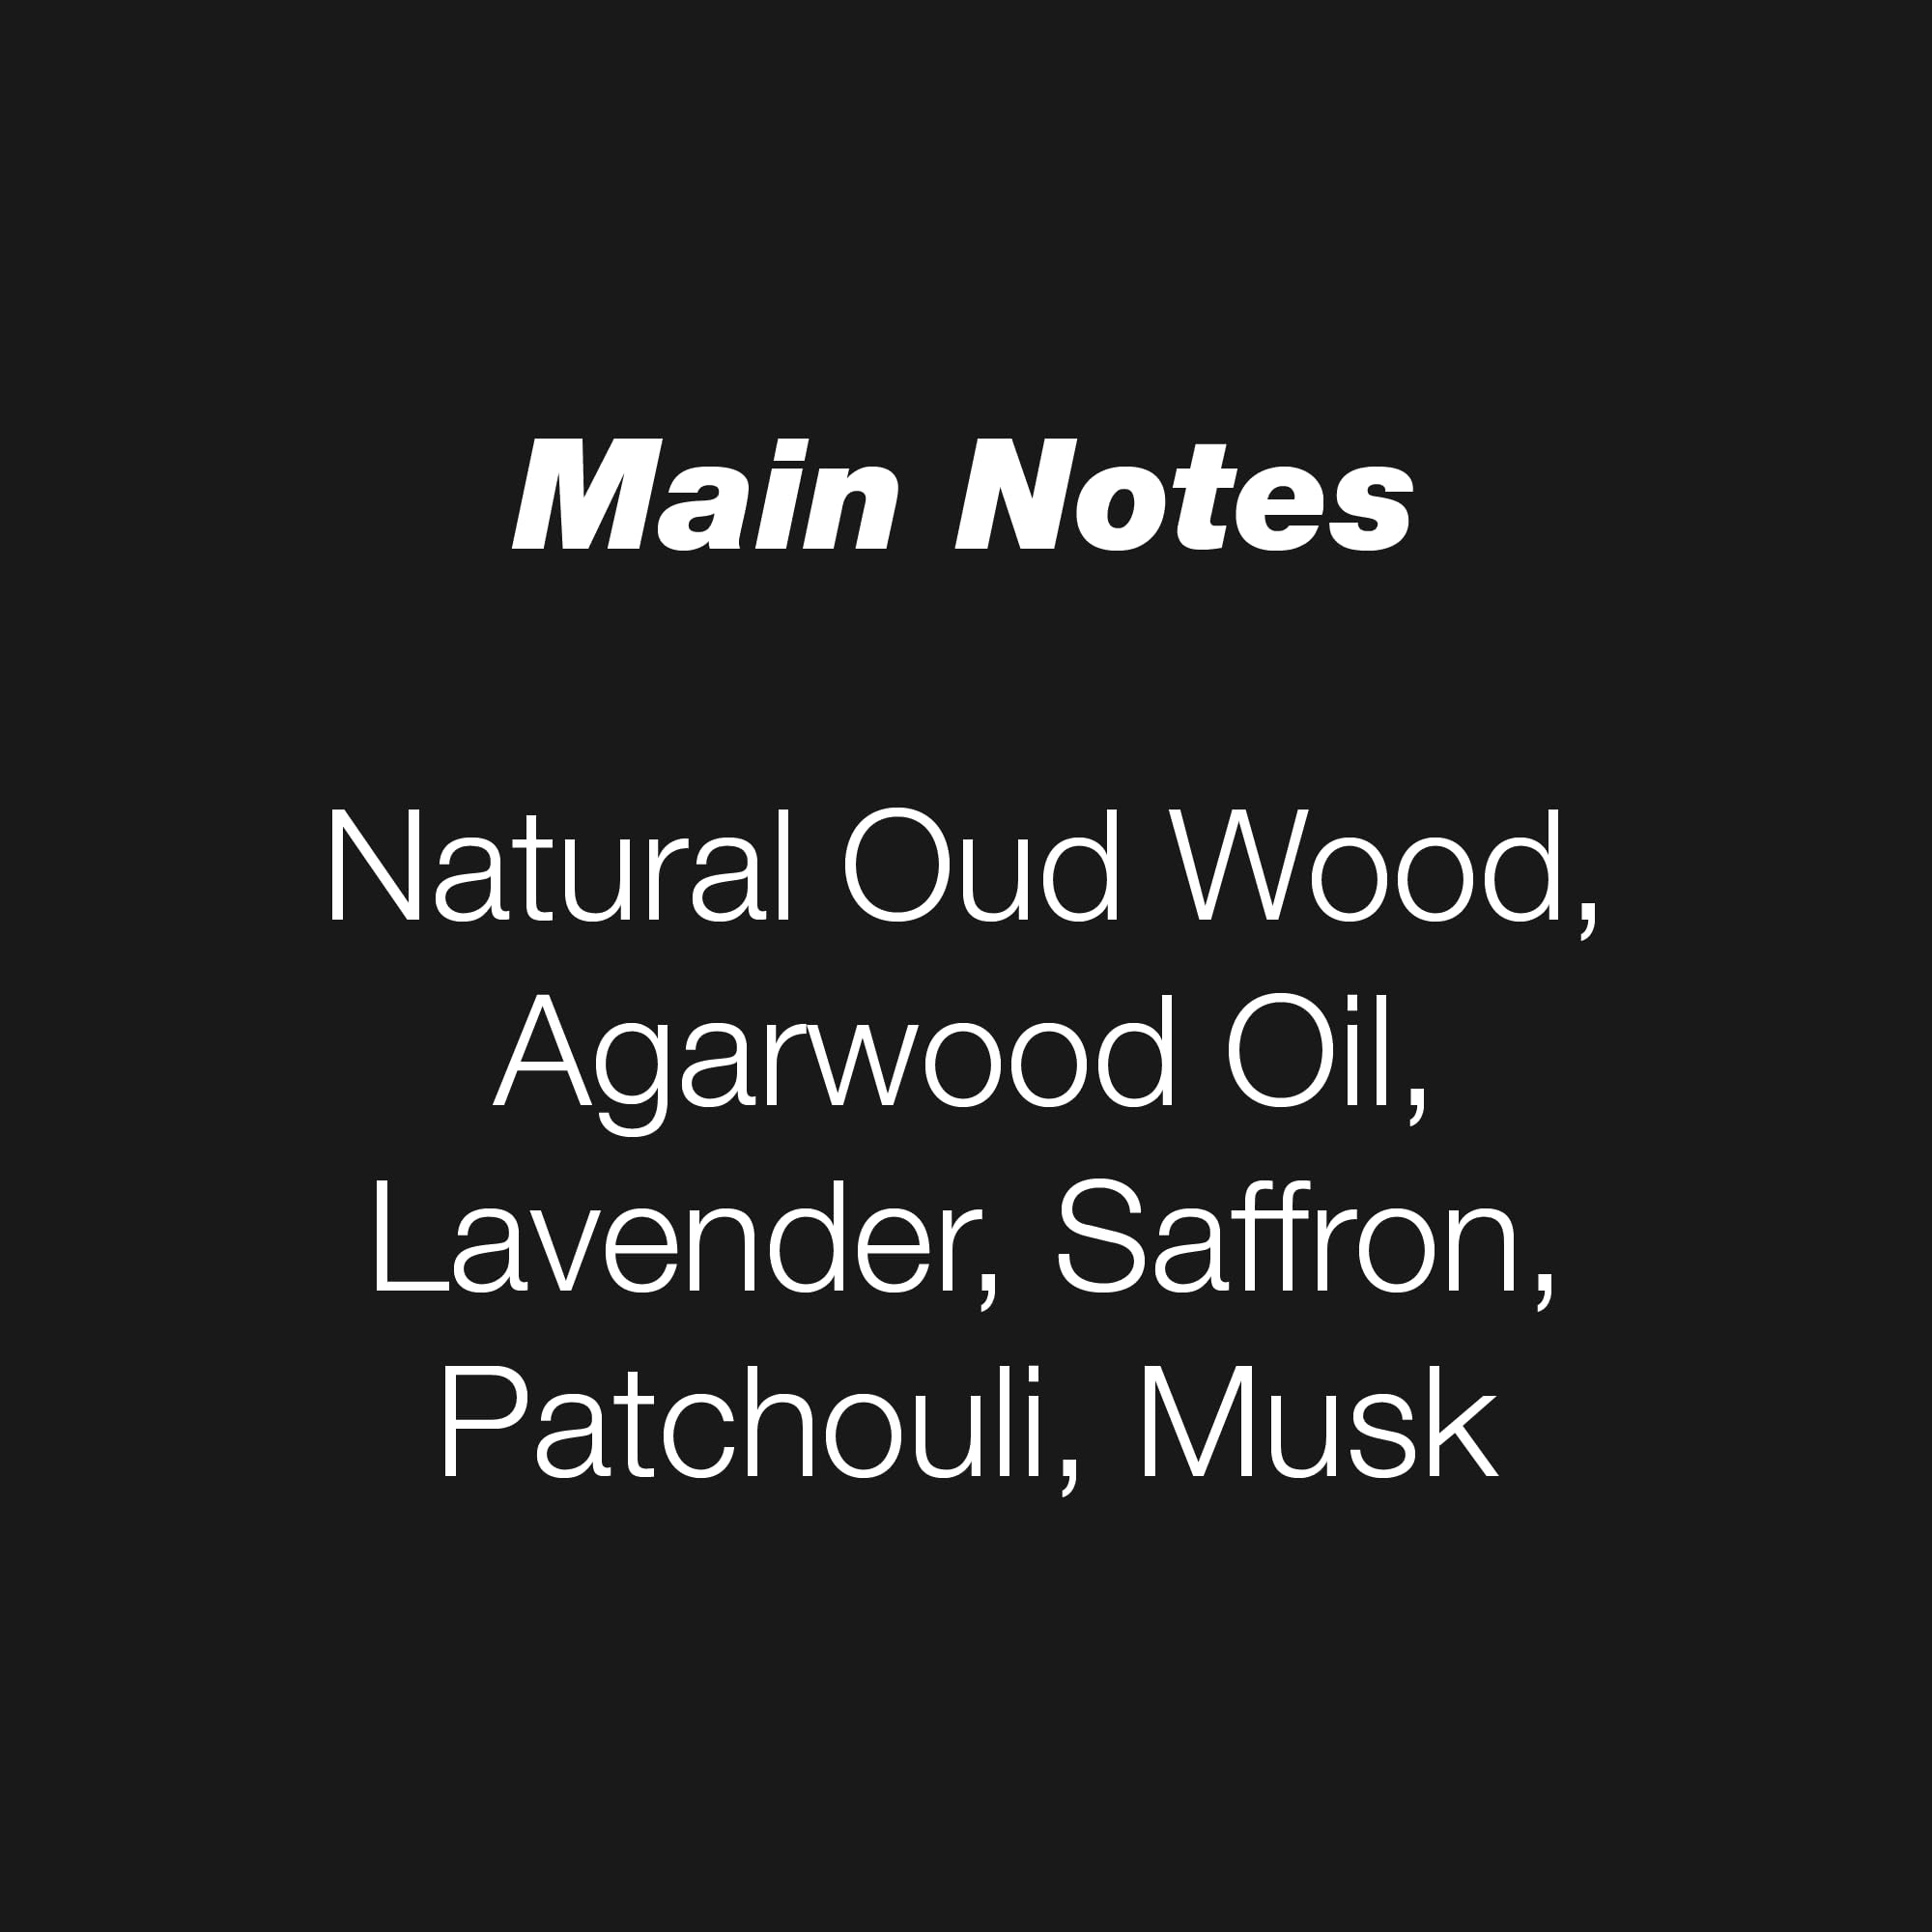 INITIO PARFUMS PRIVÉS - Oud for Greatness - 3.04 Fl Oz - Eau De Parfum Unisex - Main notes Natural Oud Wood, Agarwood Oil, Lavender, Saffron, Patchouli, Musk - 90ml